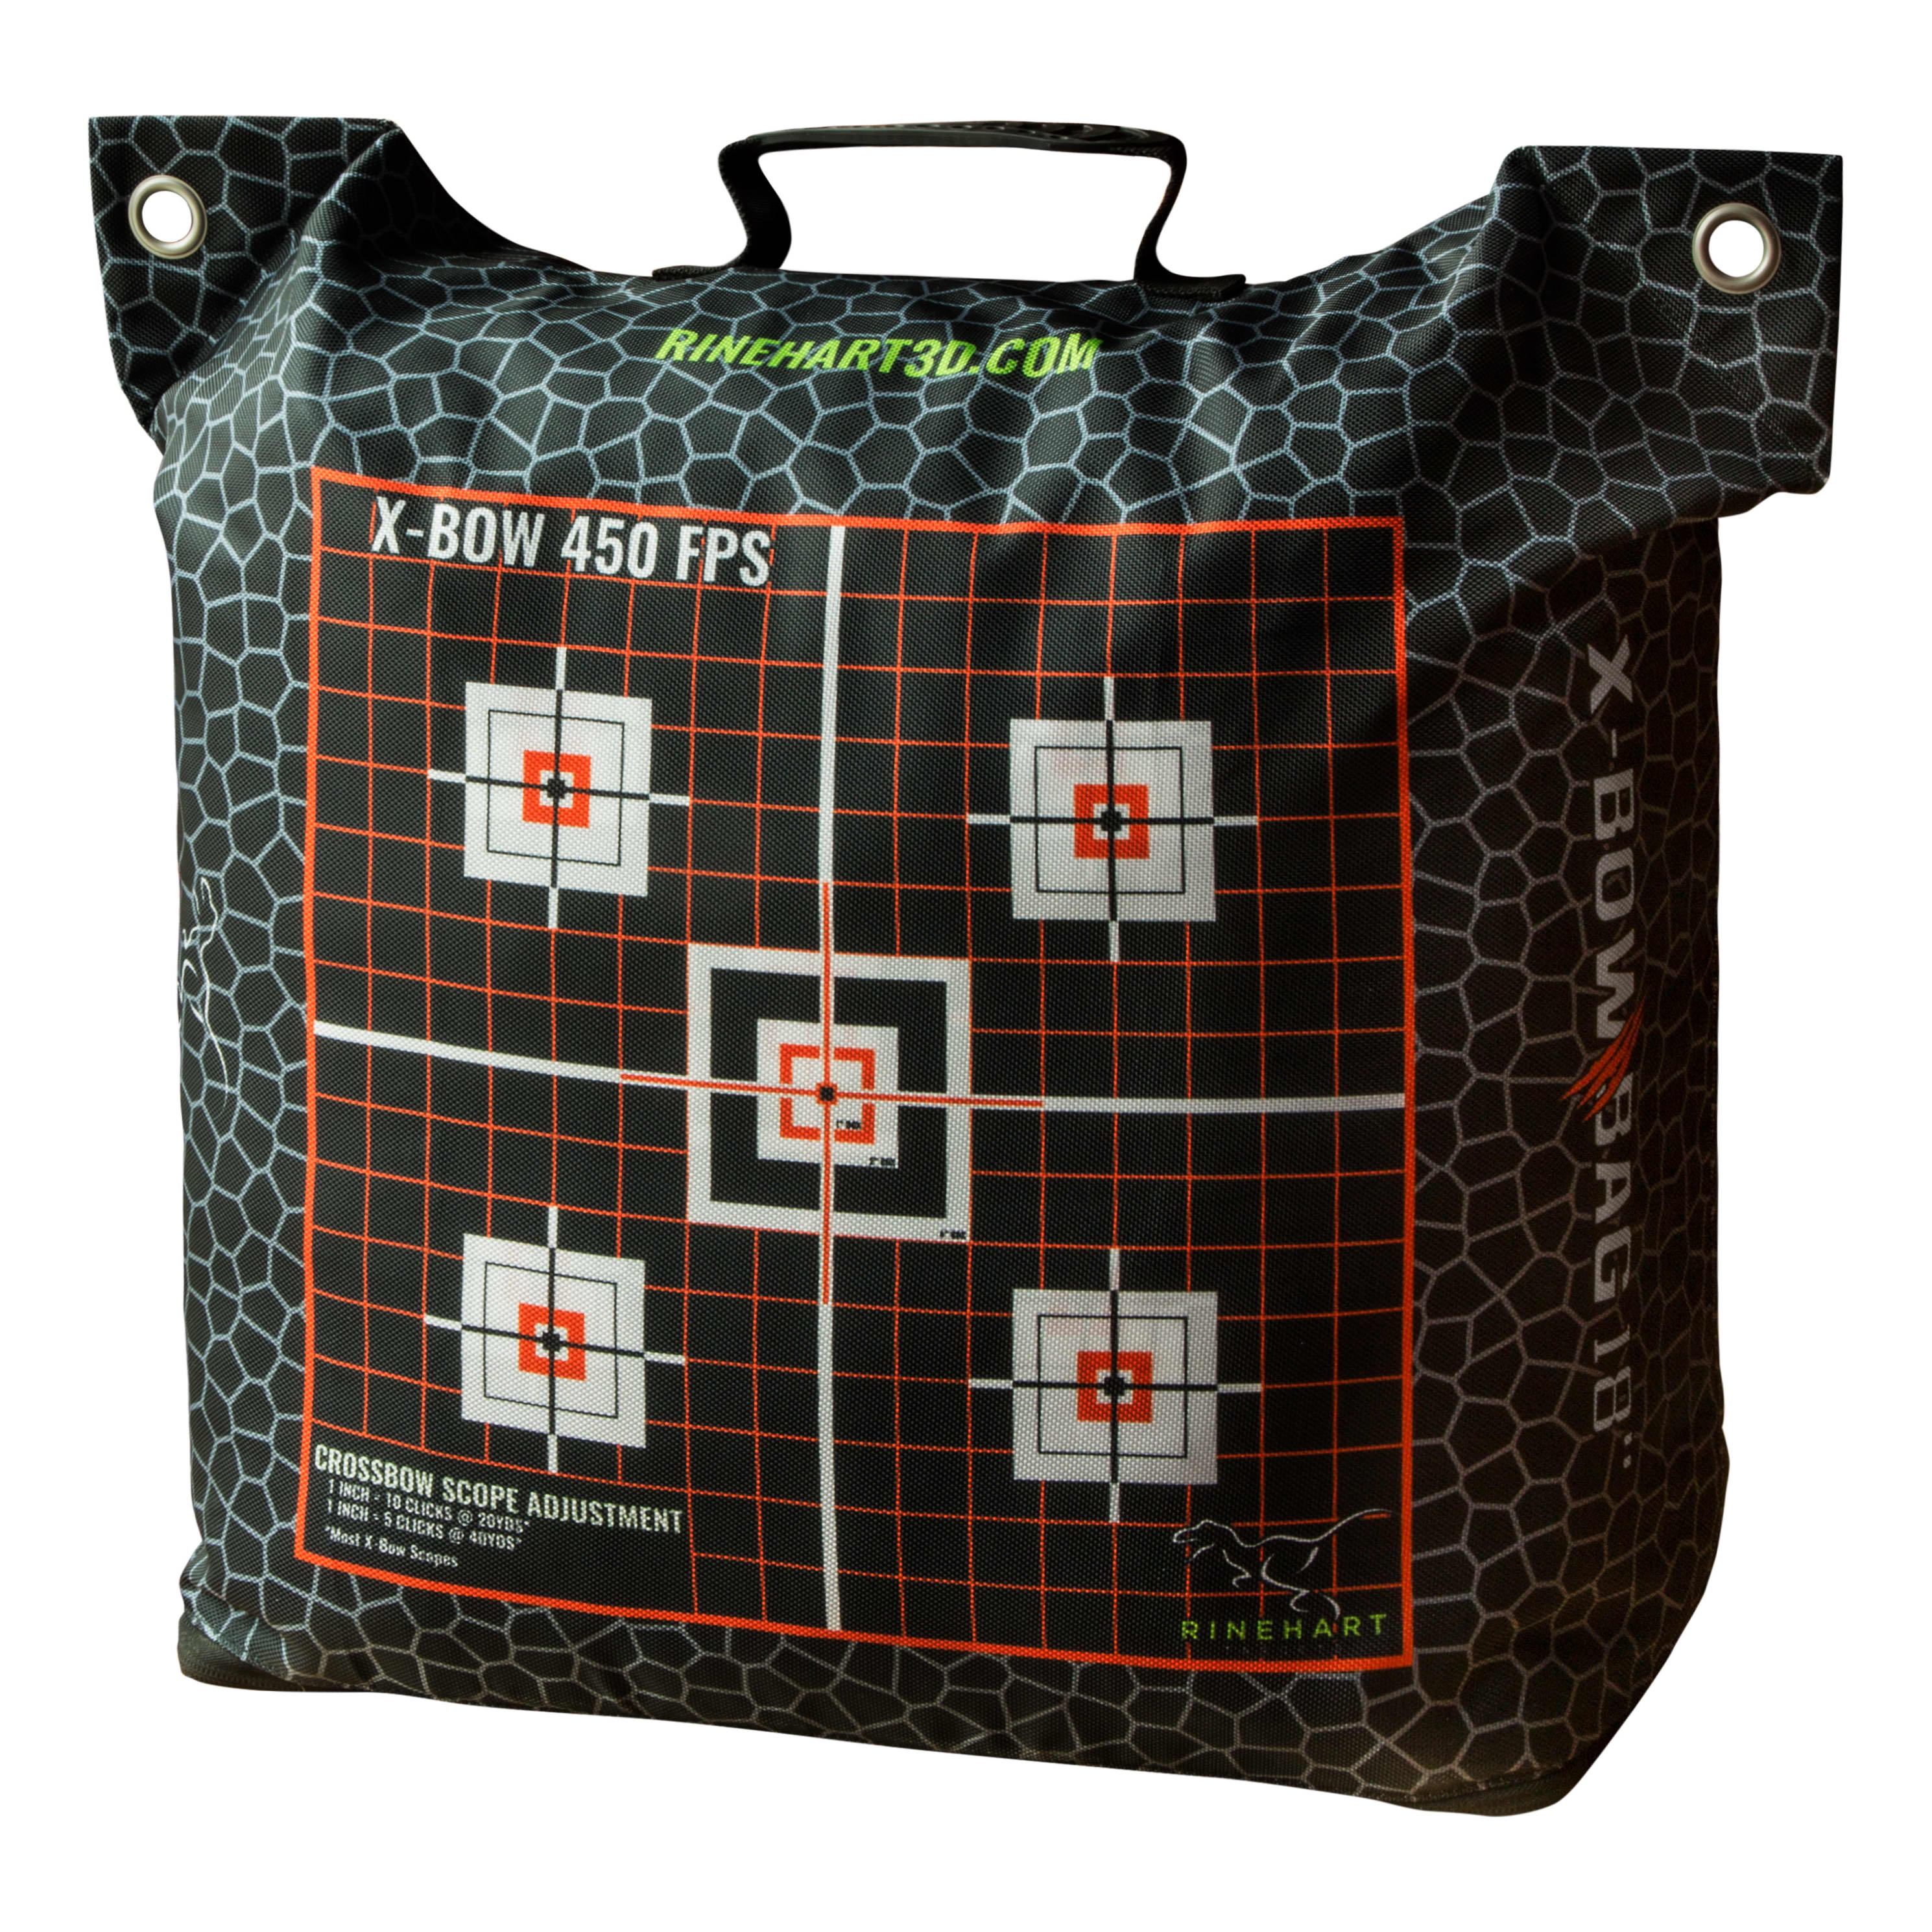 Rinehart 22” Crossbow Bag Target - Crosshair View